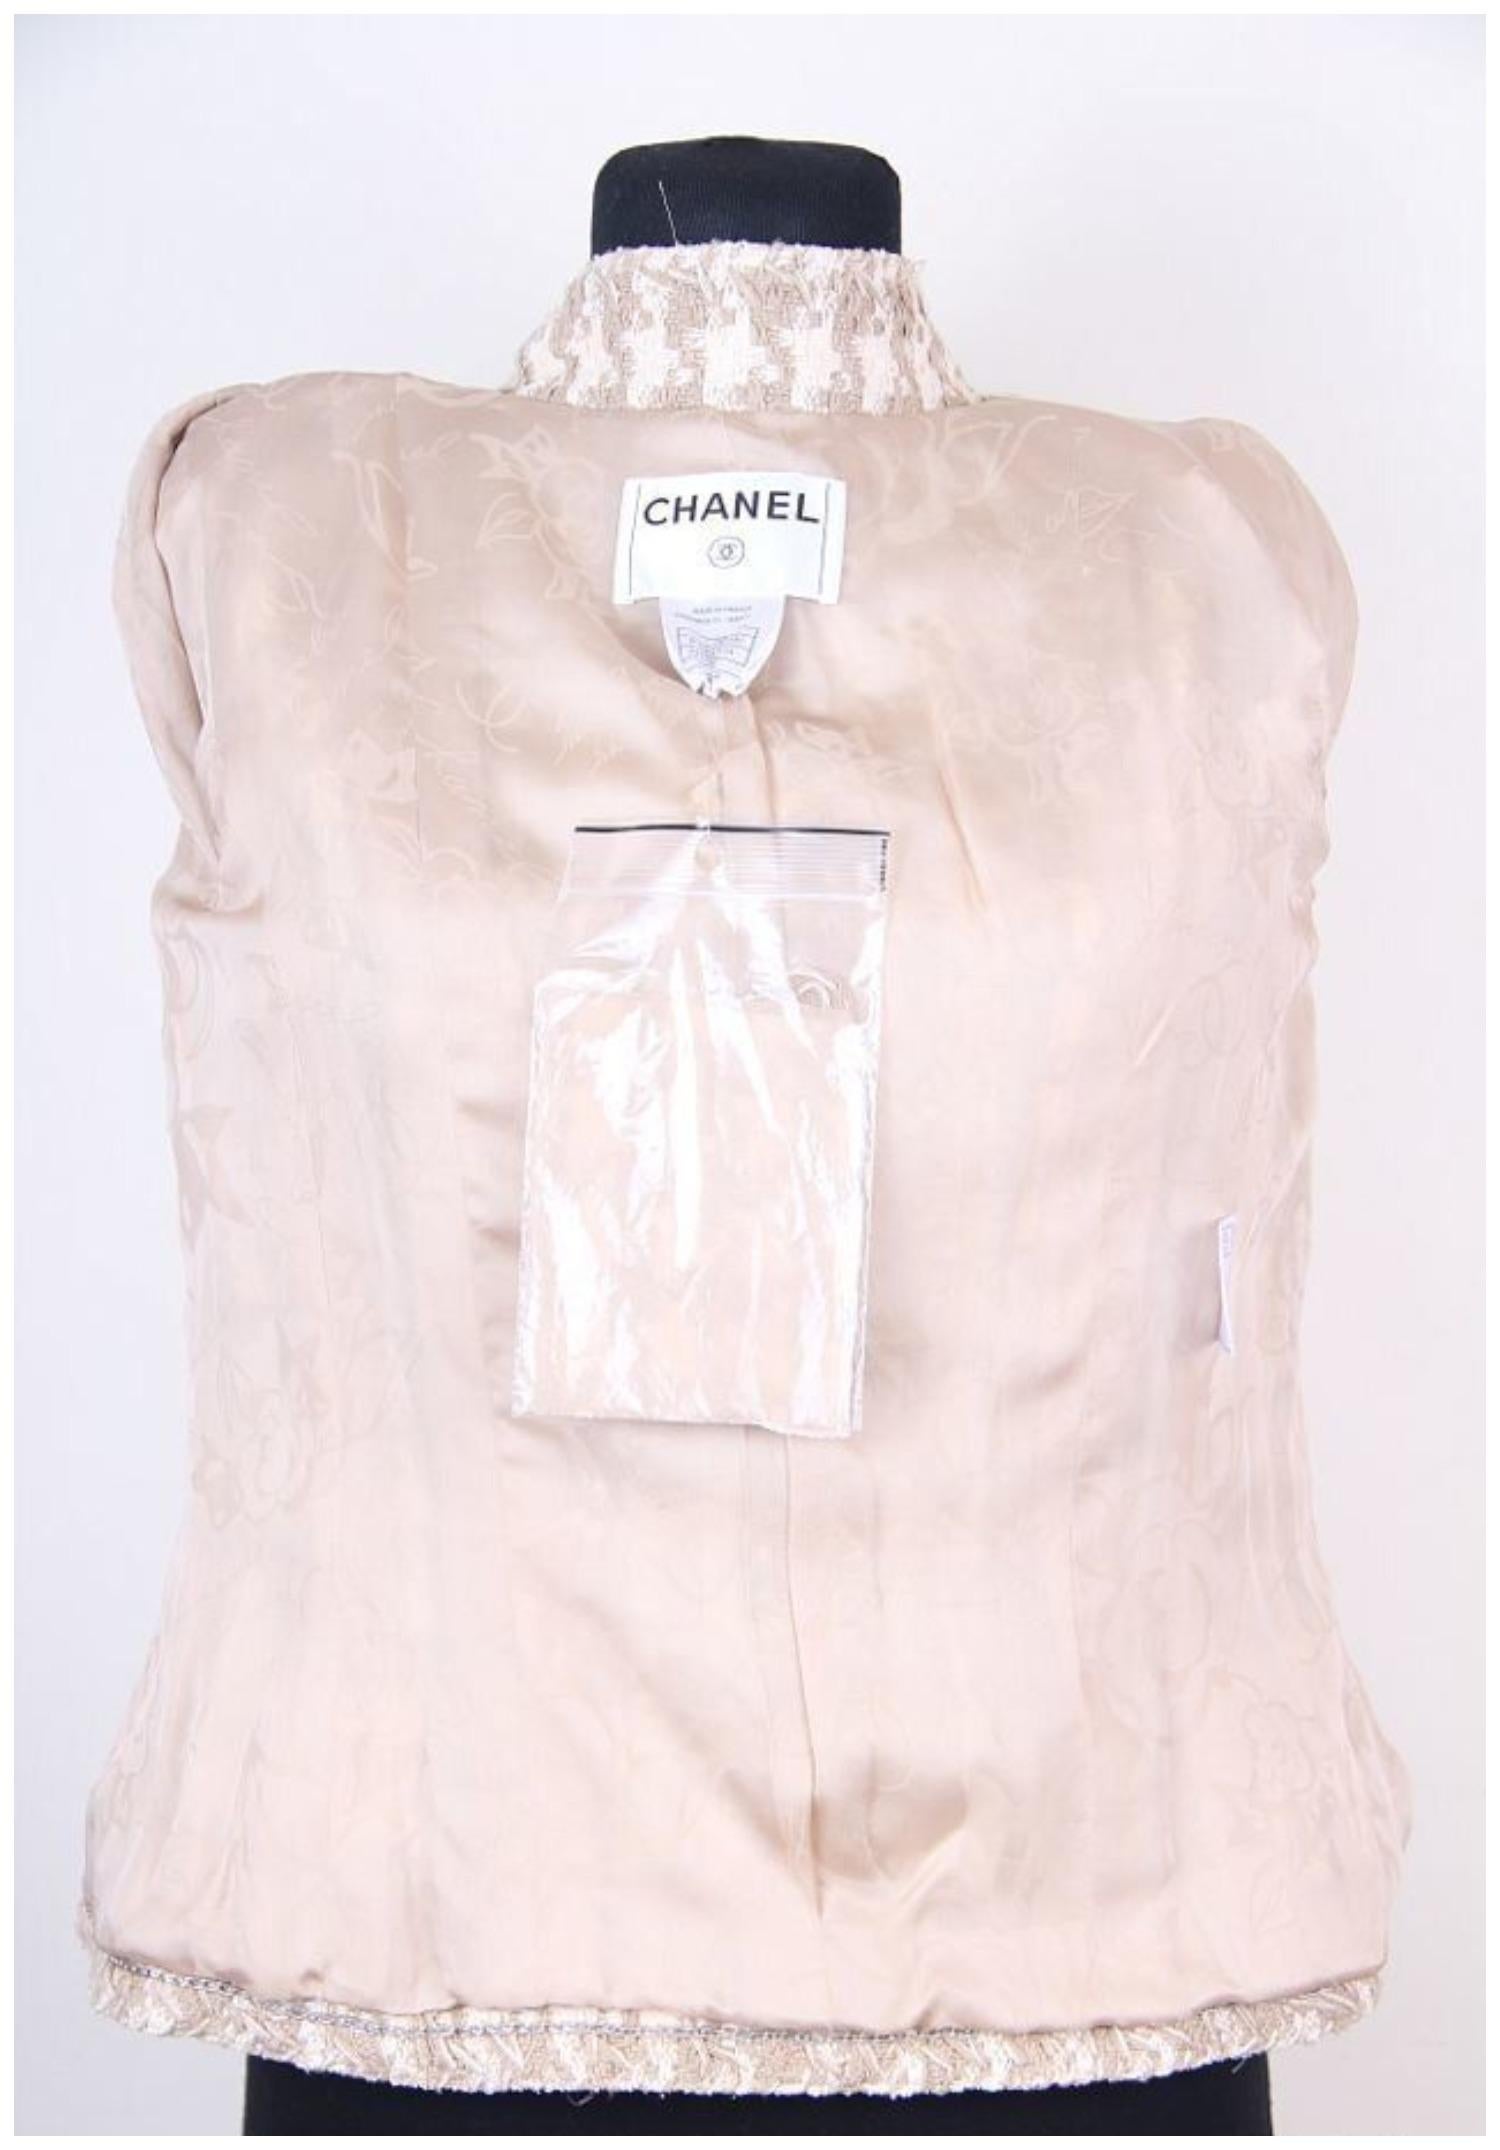 Veste en tweed beige/blanc pied-de-poule 34 FR Chanel & Karl Lagerfeld 08P 2008 Neuf - En vente à Алматинский Почтамт, KZ